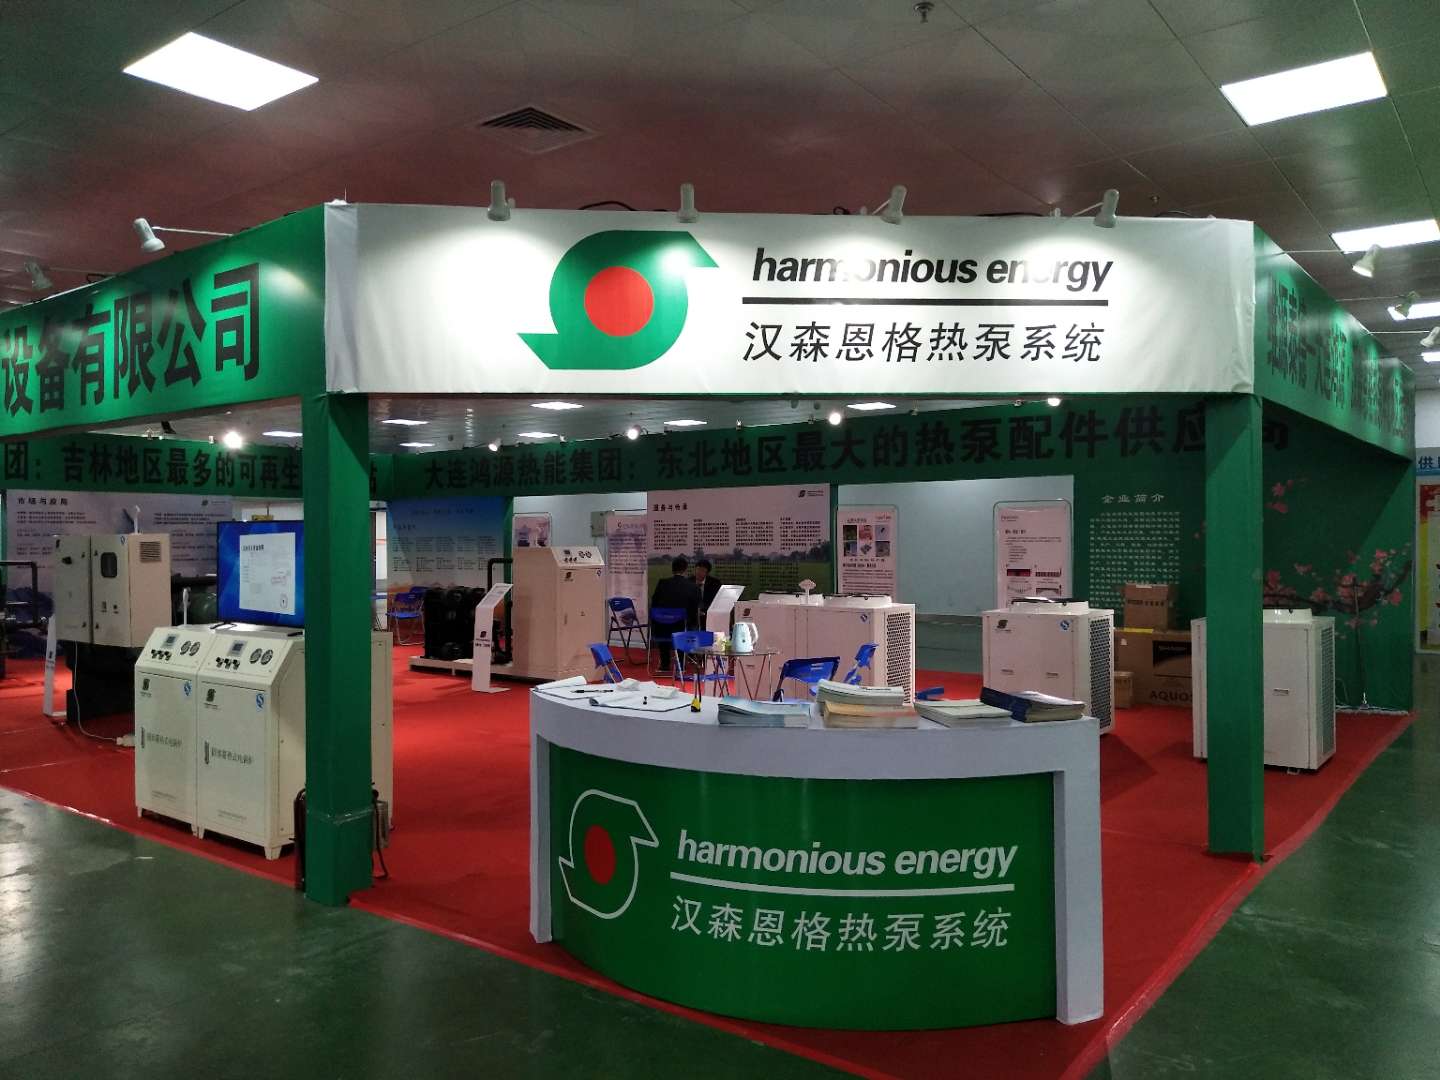 漢森恩格熱泵系統與中國?東北亞國際清潔能源供暖產業博覽會